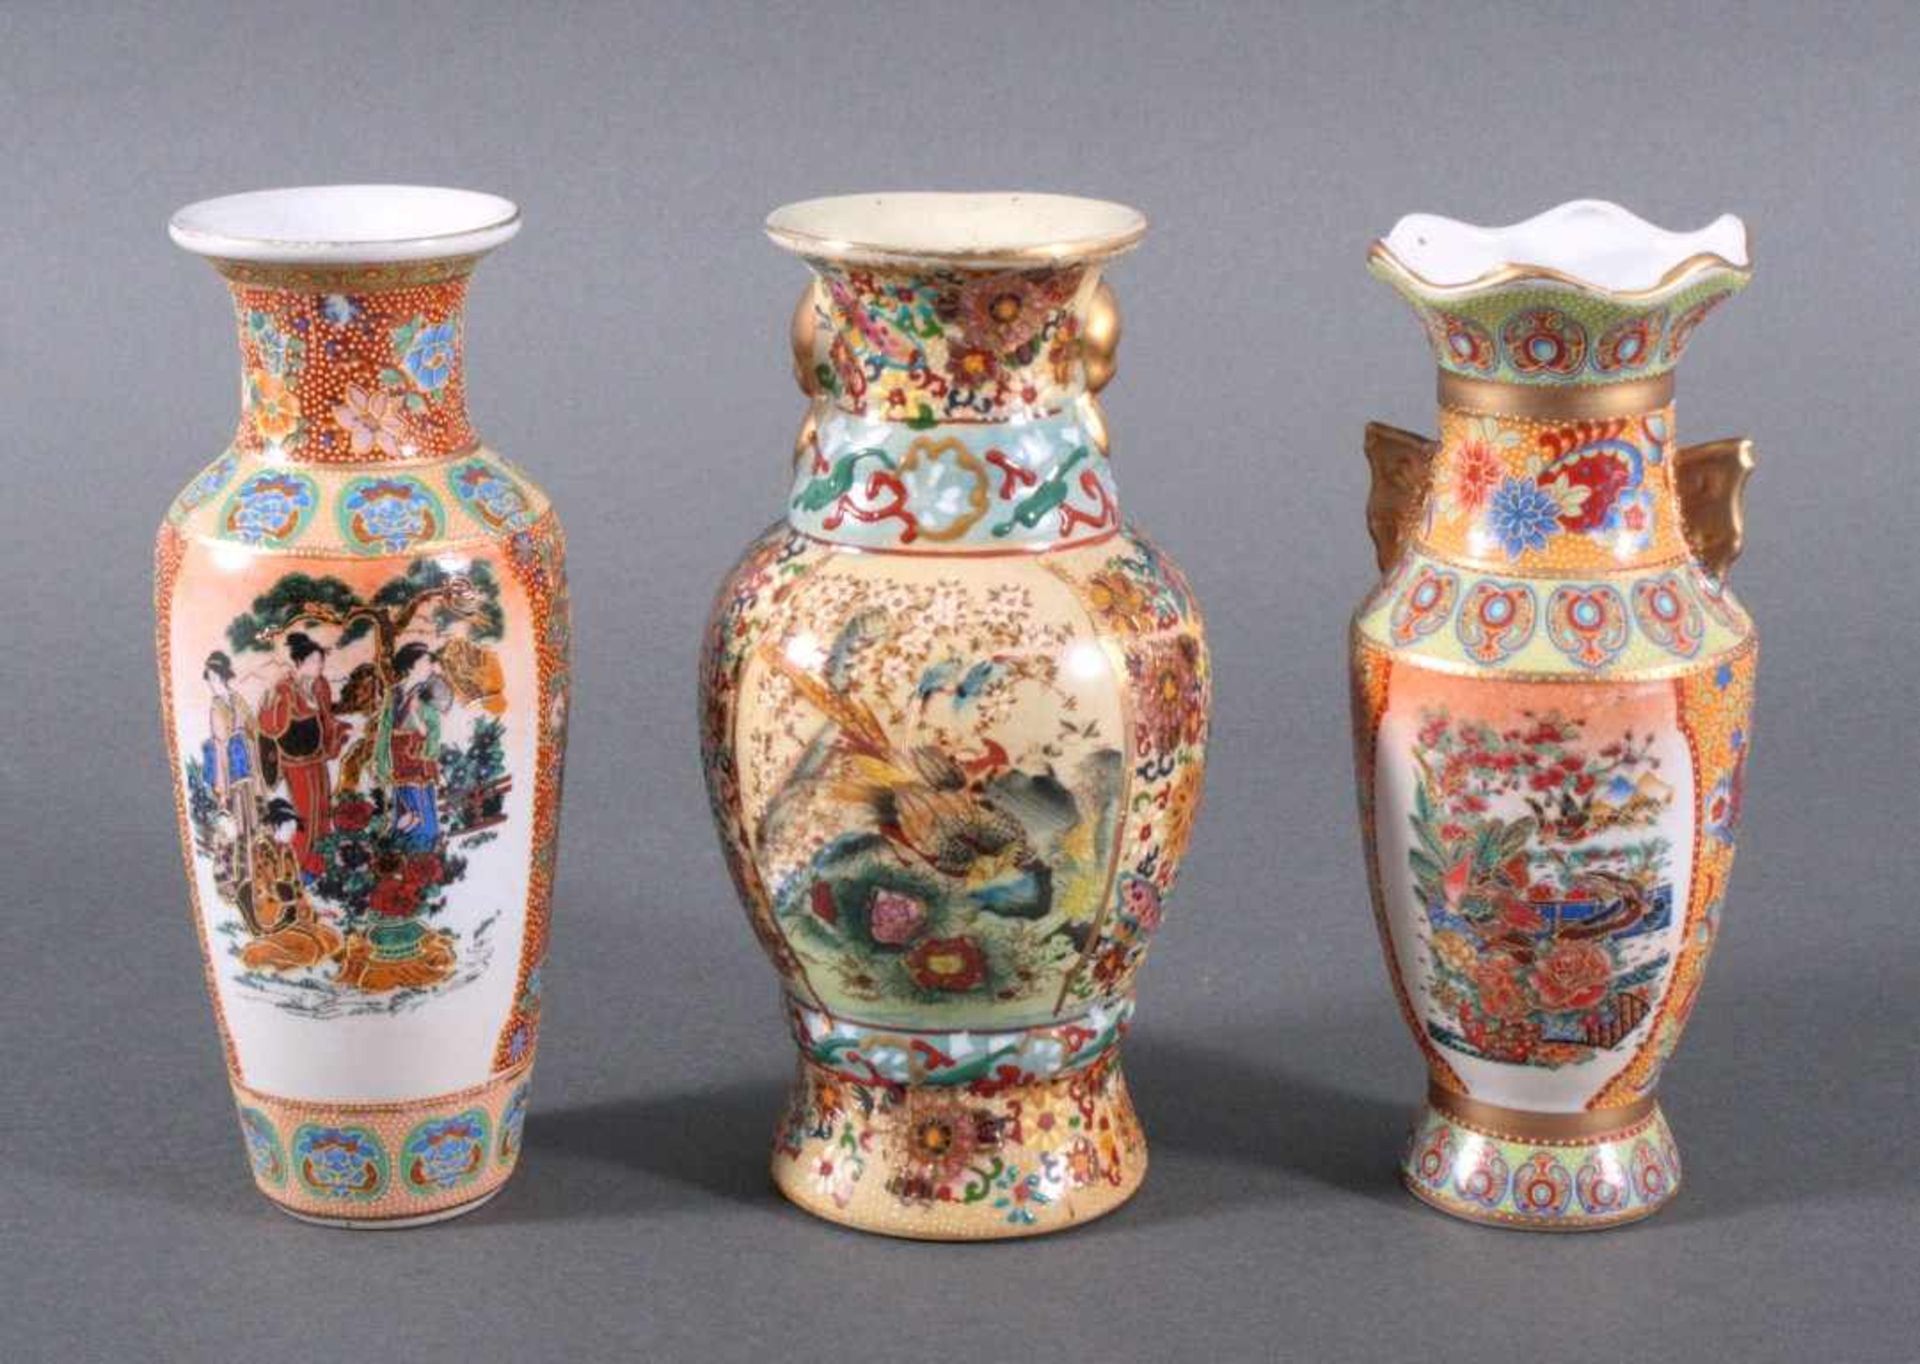 3 asiatische VasenPolychrom bemalt mit Alltasgszene und Tieren, Goldstaffagen,ohne Marke auf der